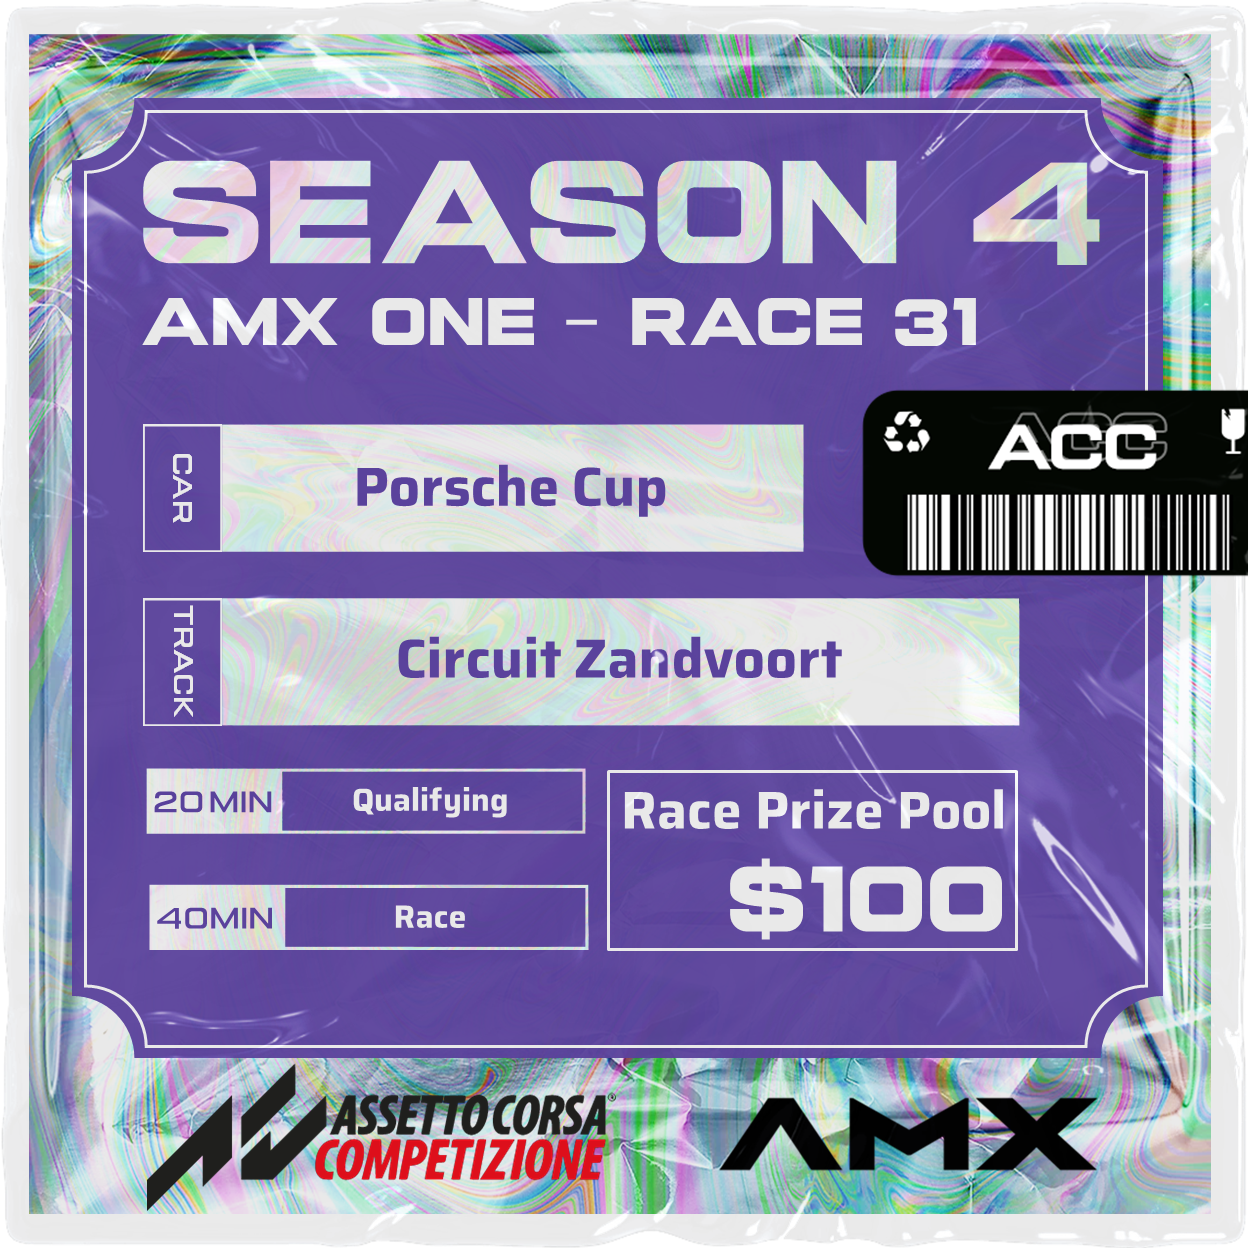 AMX ONE - RACE 31 [4/14 - 5:50 PM GMT]